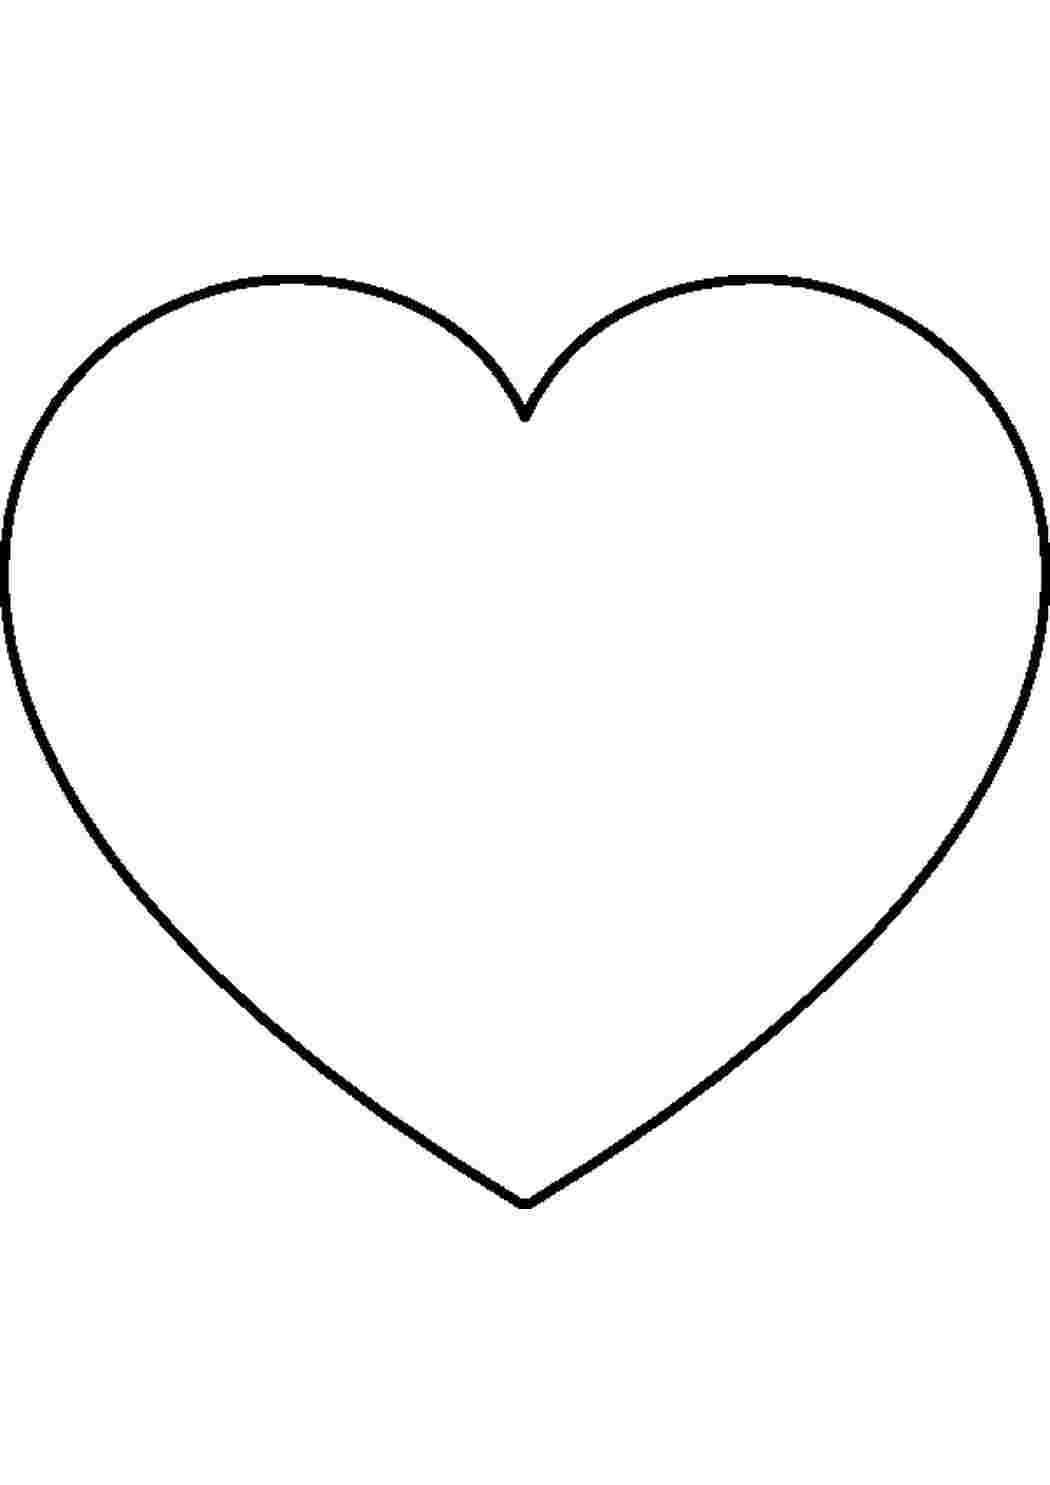 Объемное Сердце с крыльями из бумаги | Развертка Сердца | Бумажное моделирование | Kotanika